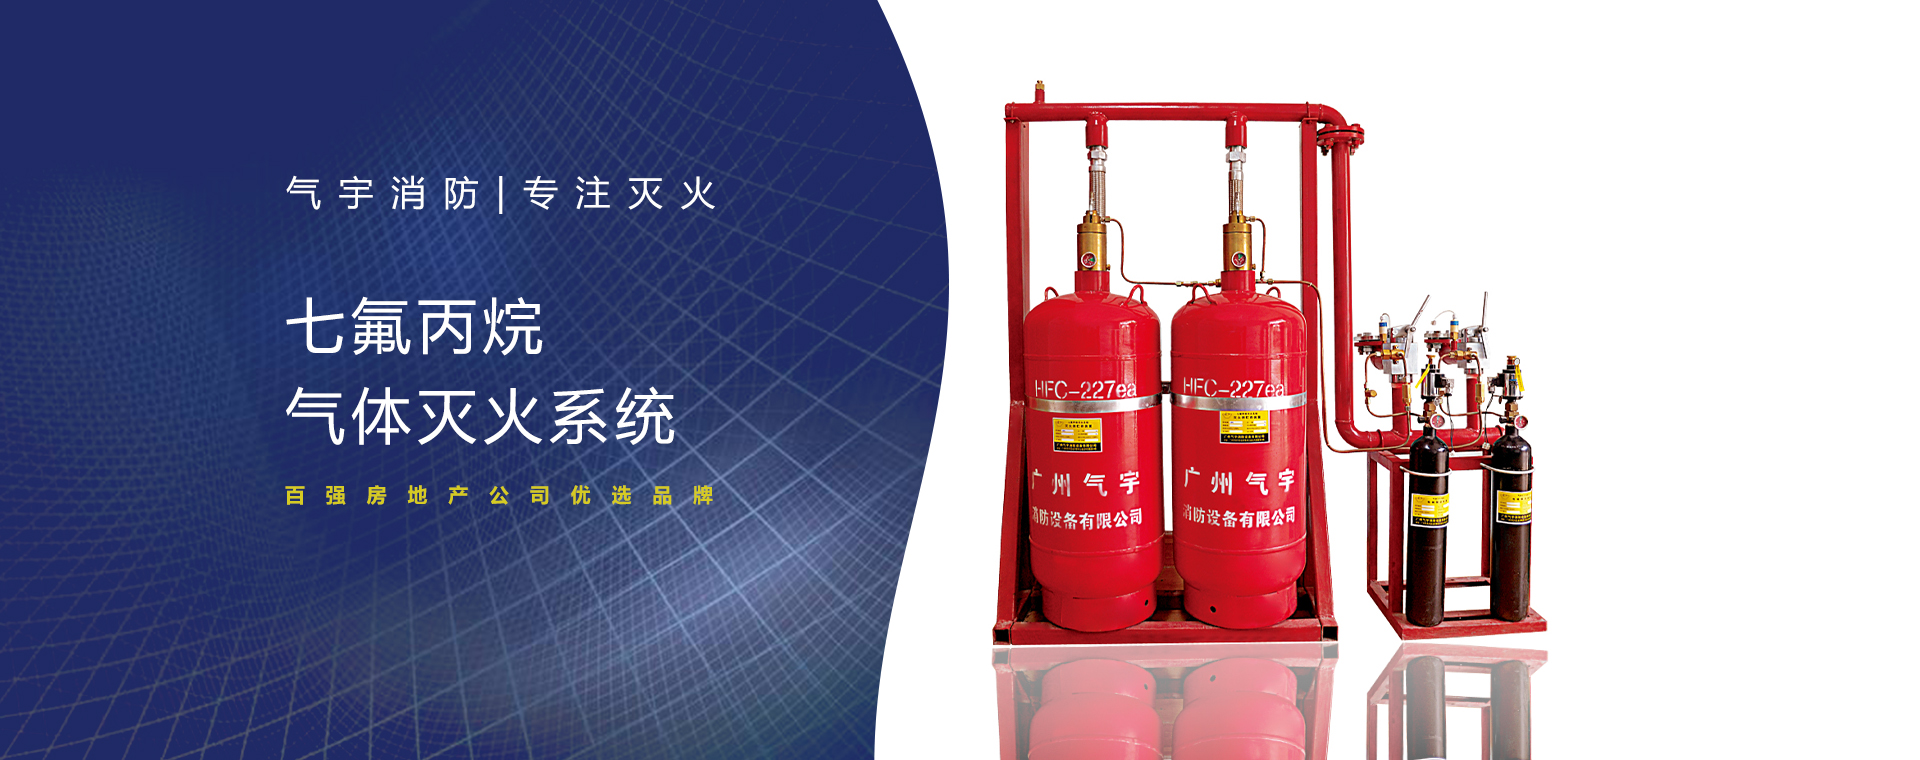 管网七氟丙烷自动灭火系统热销 广州气宇生产厂家优惠价